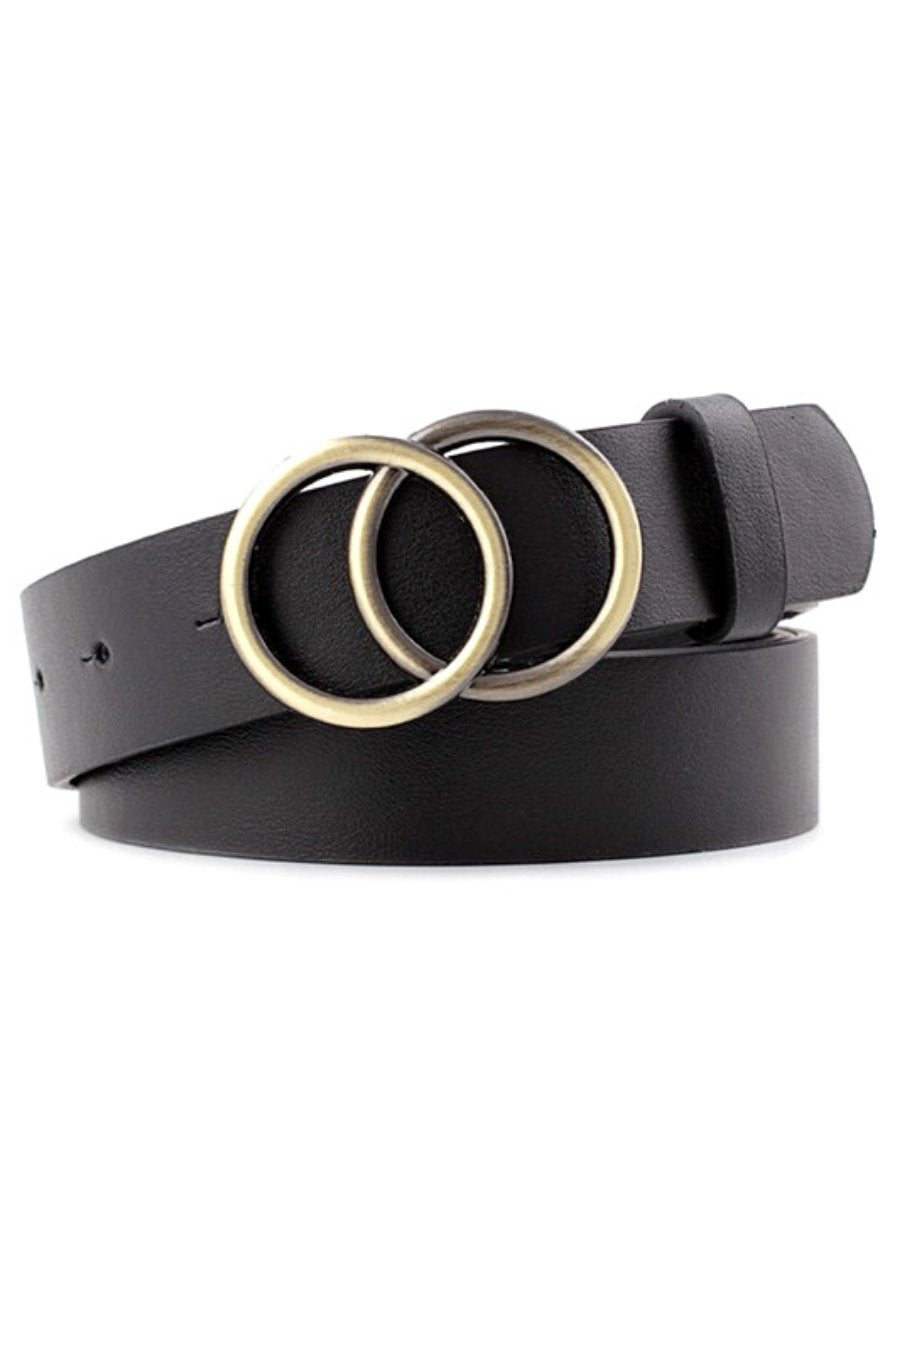 Simple Double Ring Buckle Belt - Jess Lea Boutique